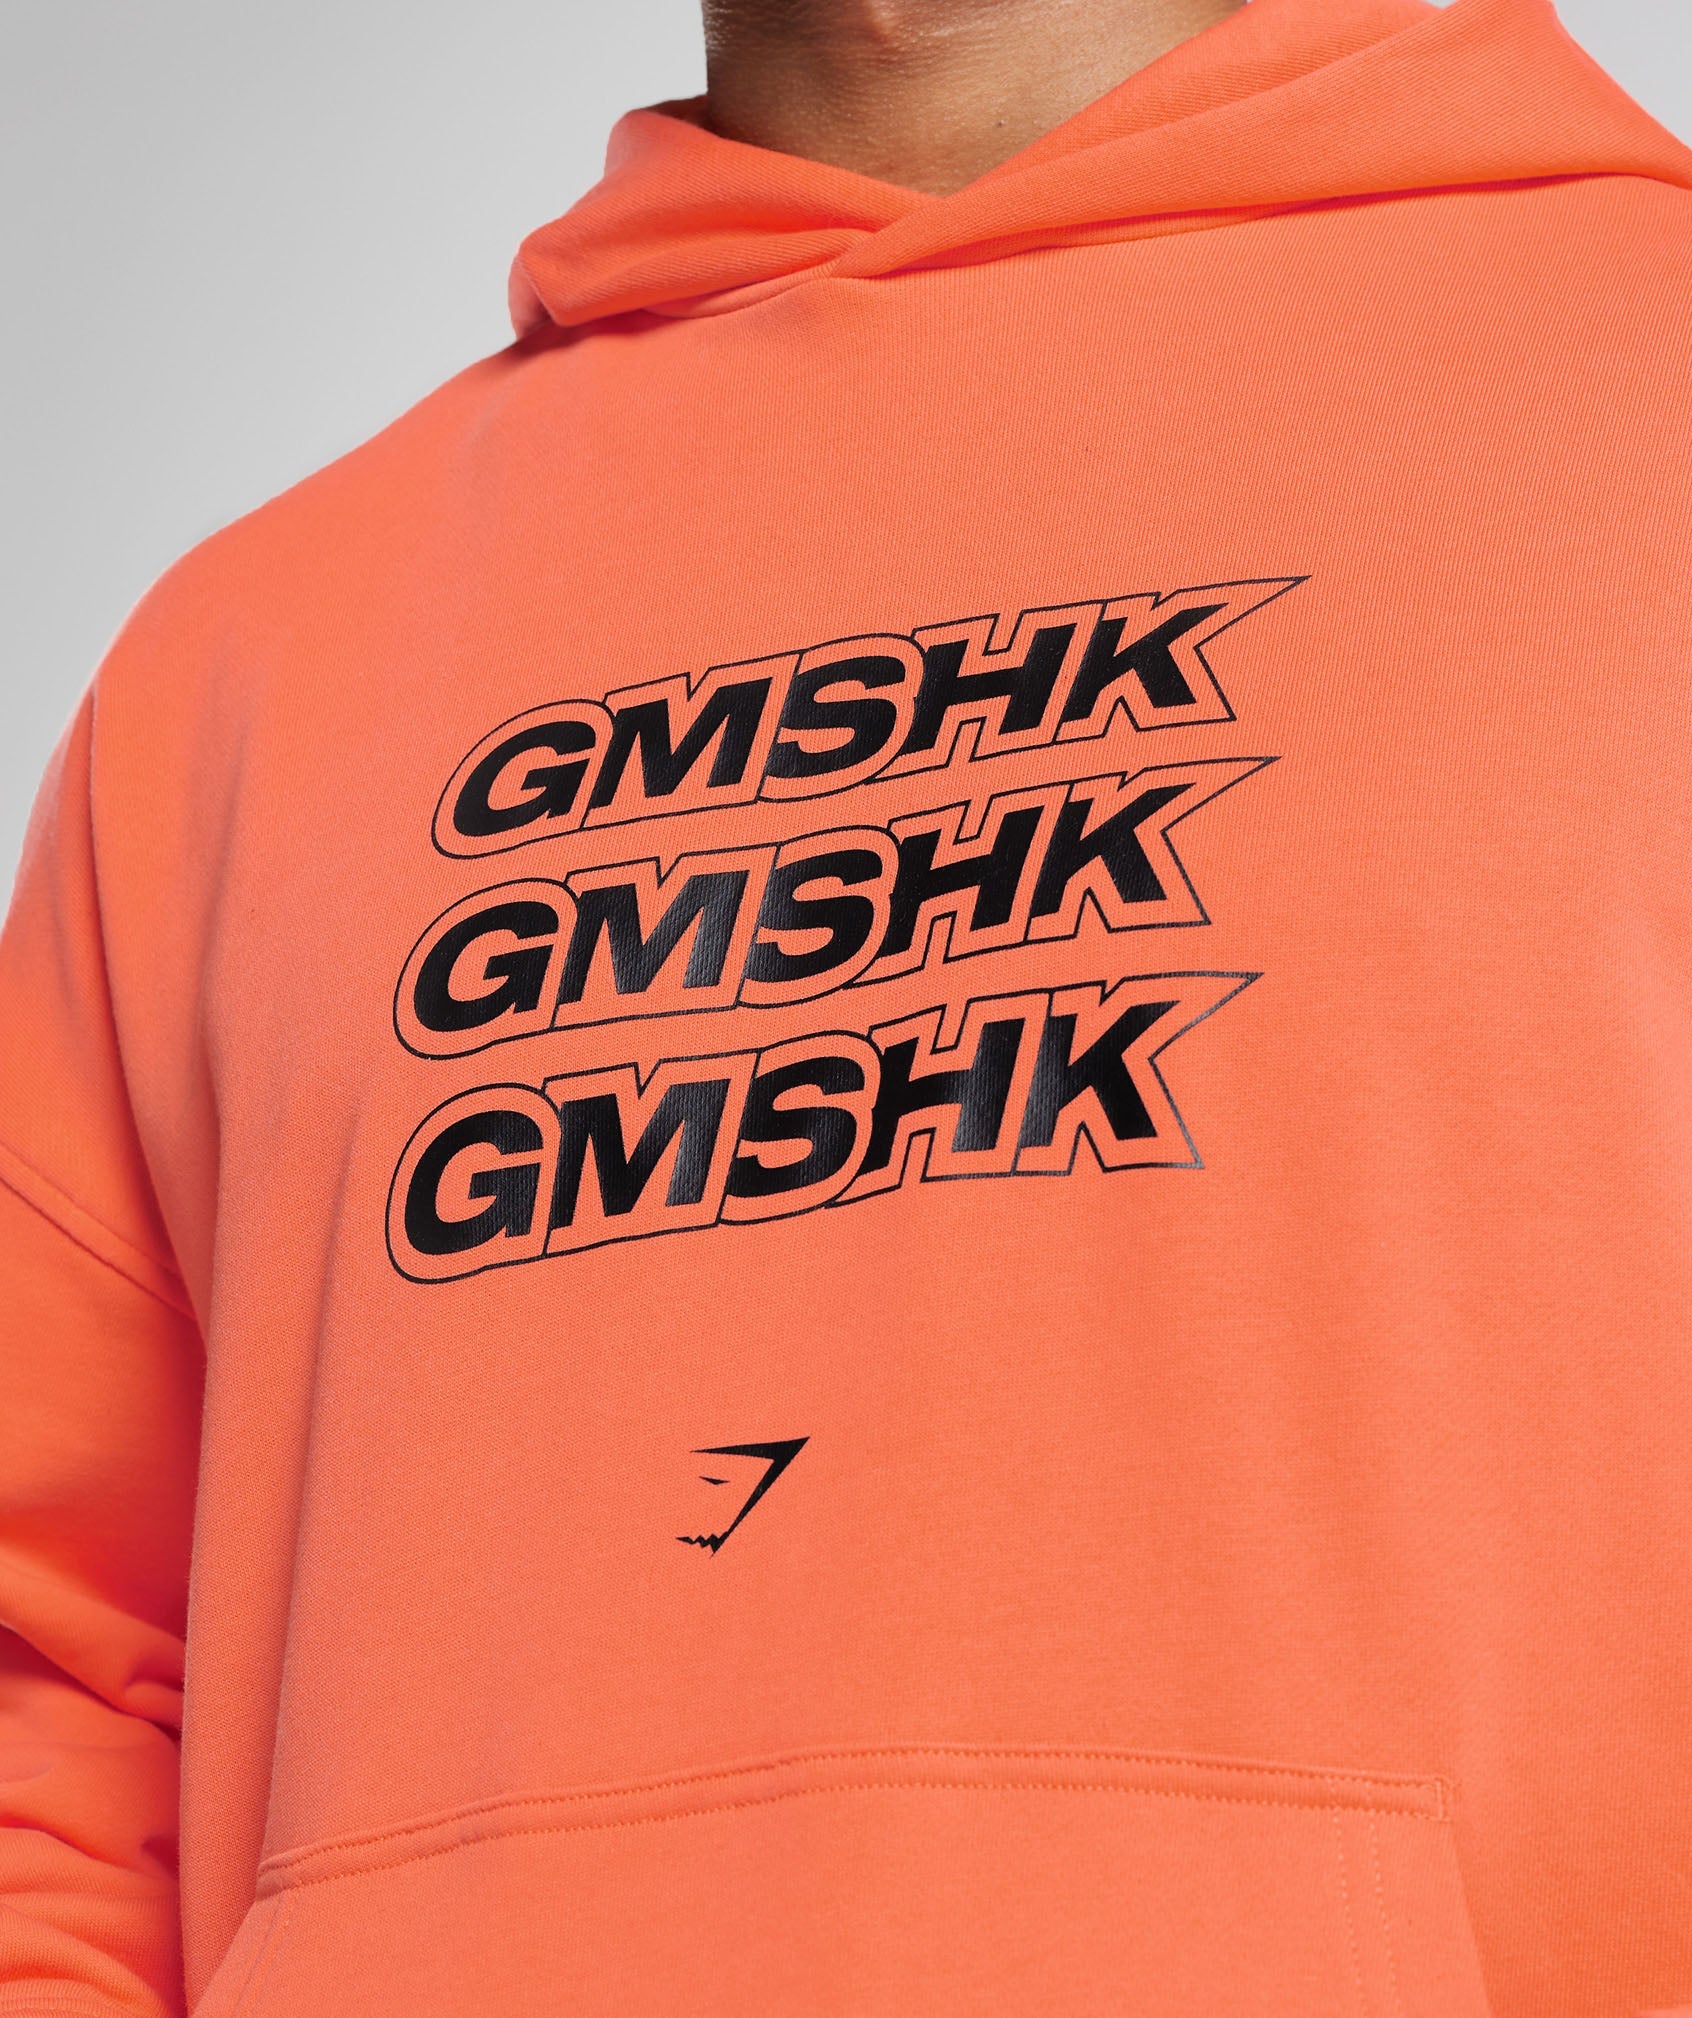 Gymshark GMSHK Hoodie - Solstice Orange